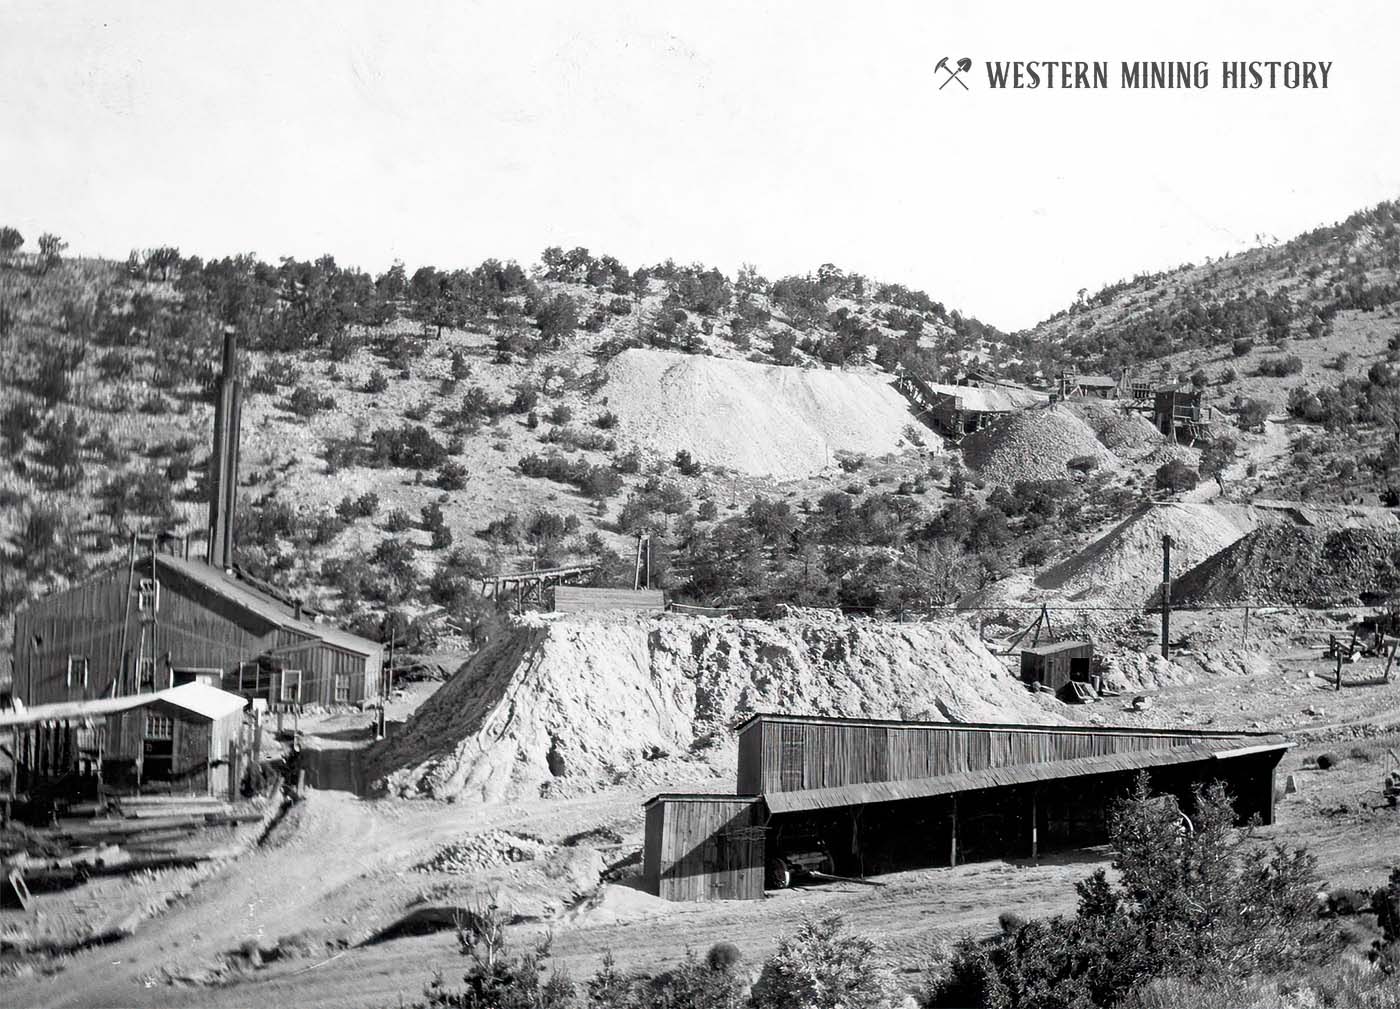 Kelly mine in 1916